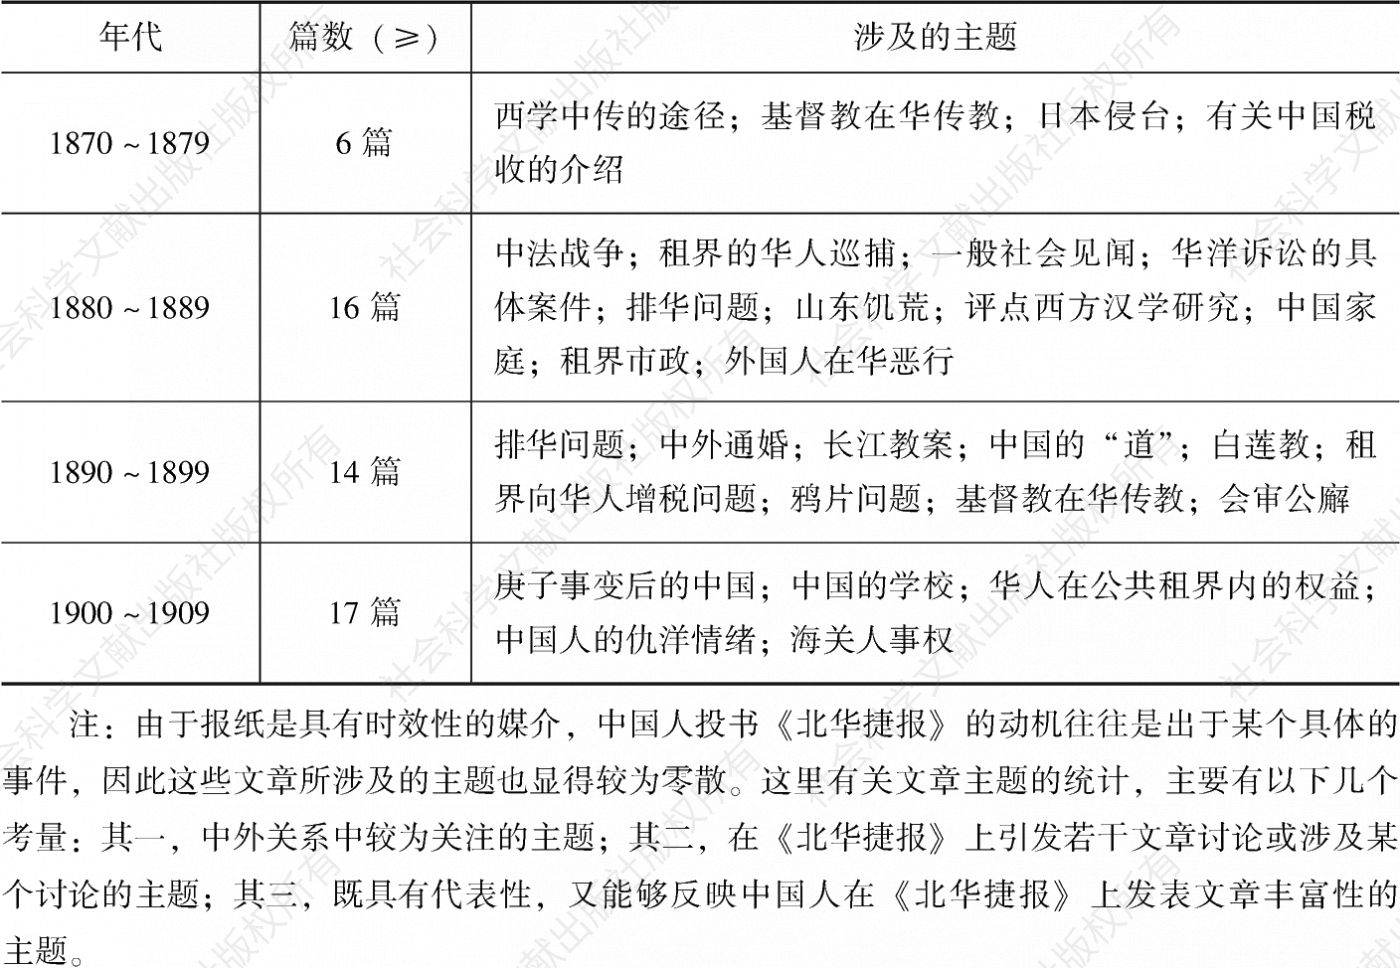 表1-1 1870～1909年中国人在《北华捷报》上发表文章的基本情况